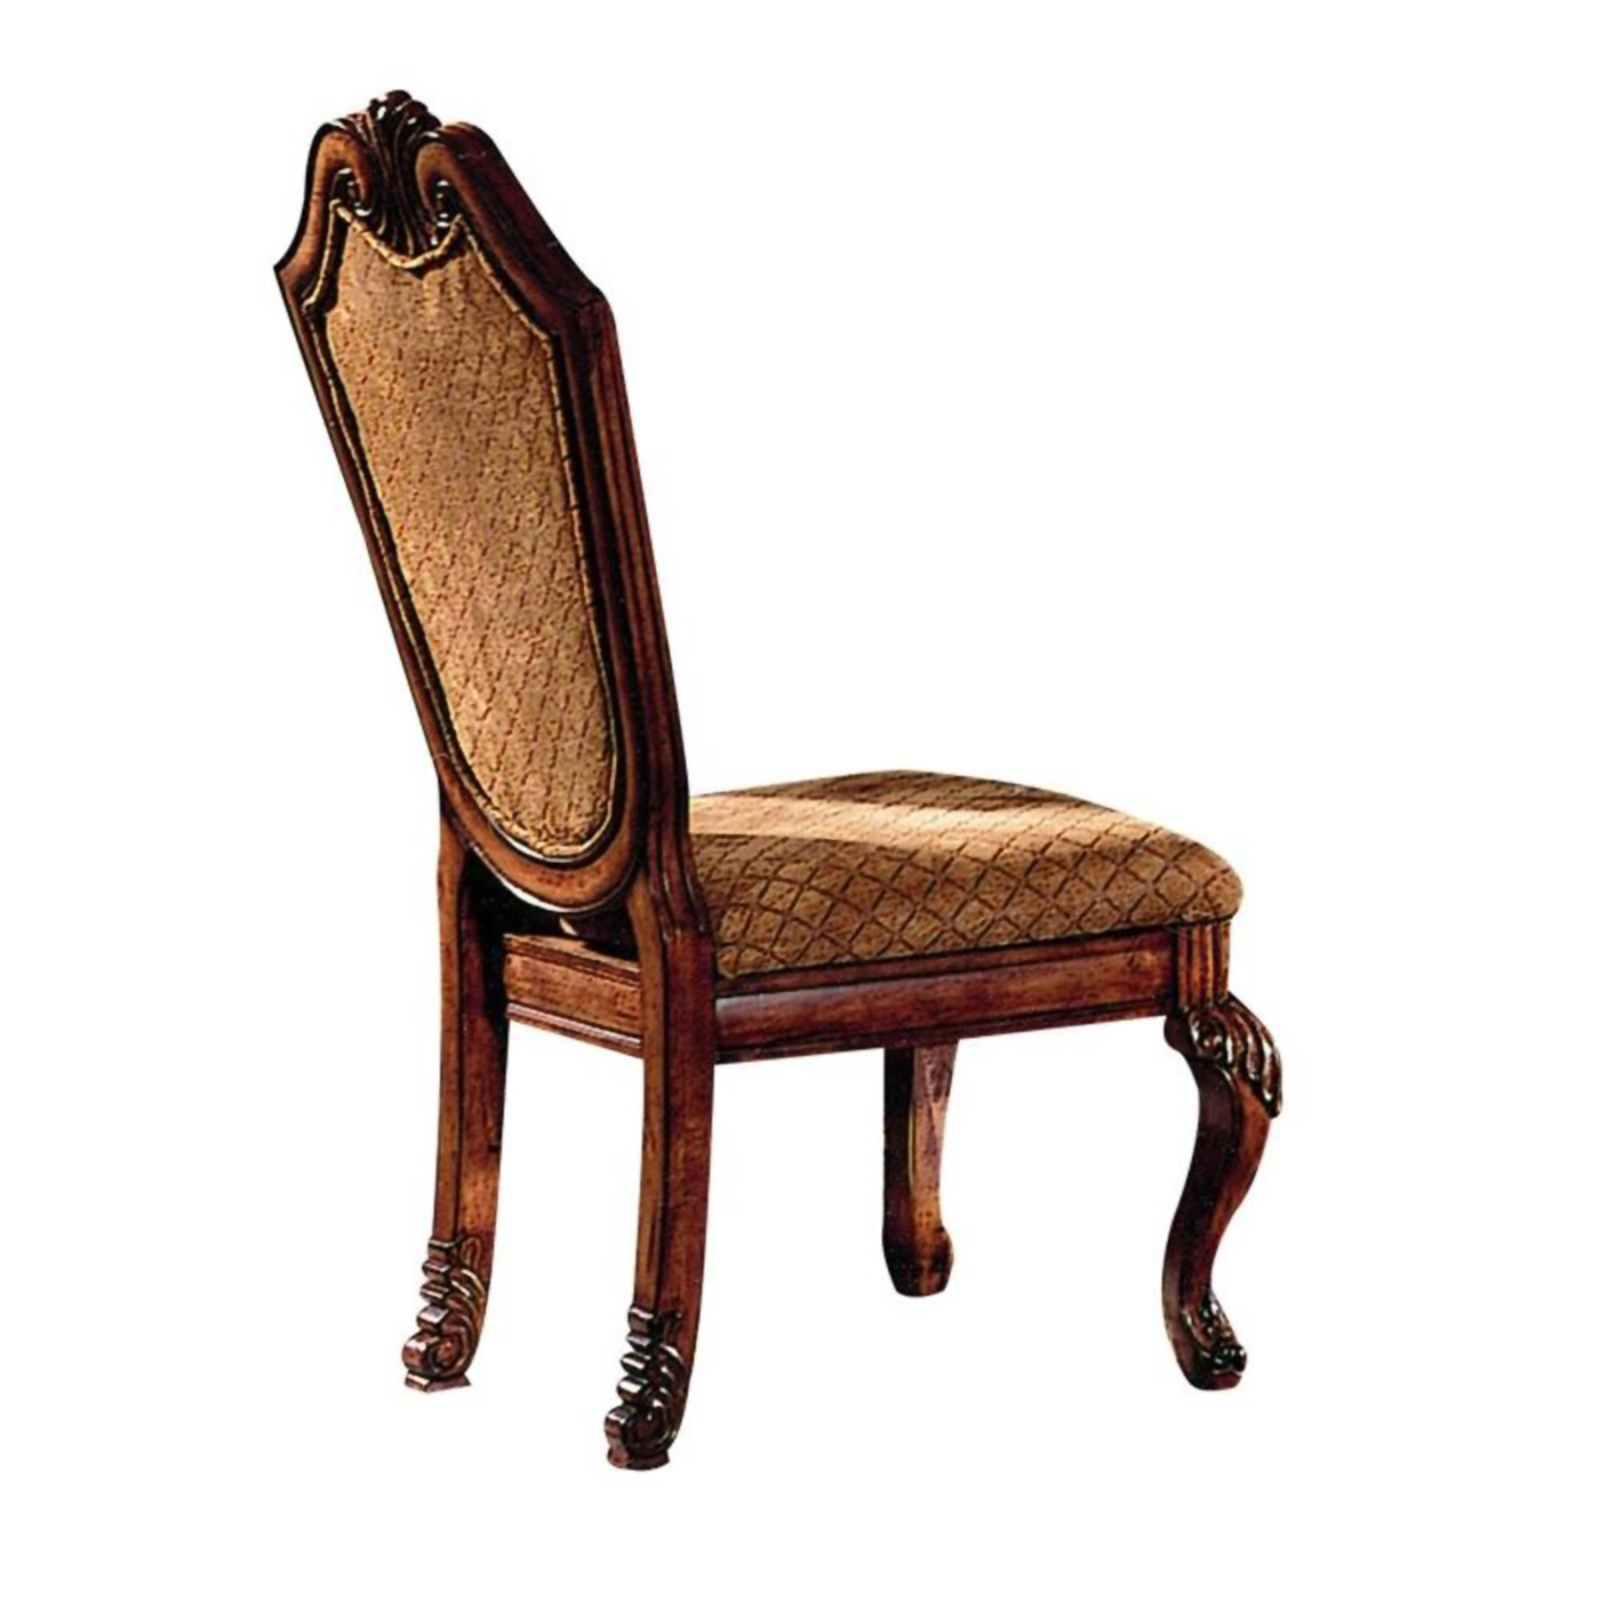 Acme Furniture Chateau De Ville Wooden 2pc. Side Chair Set - Cherry